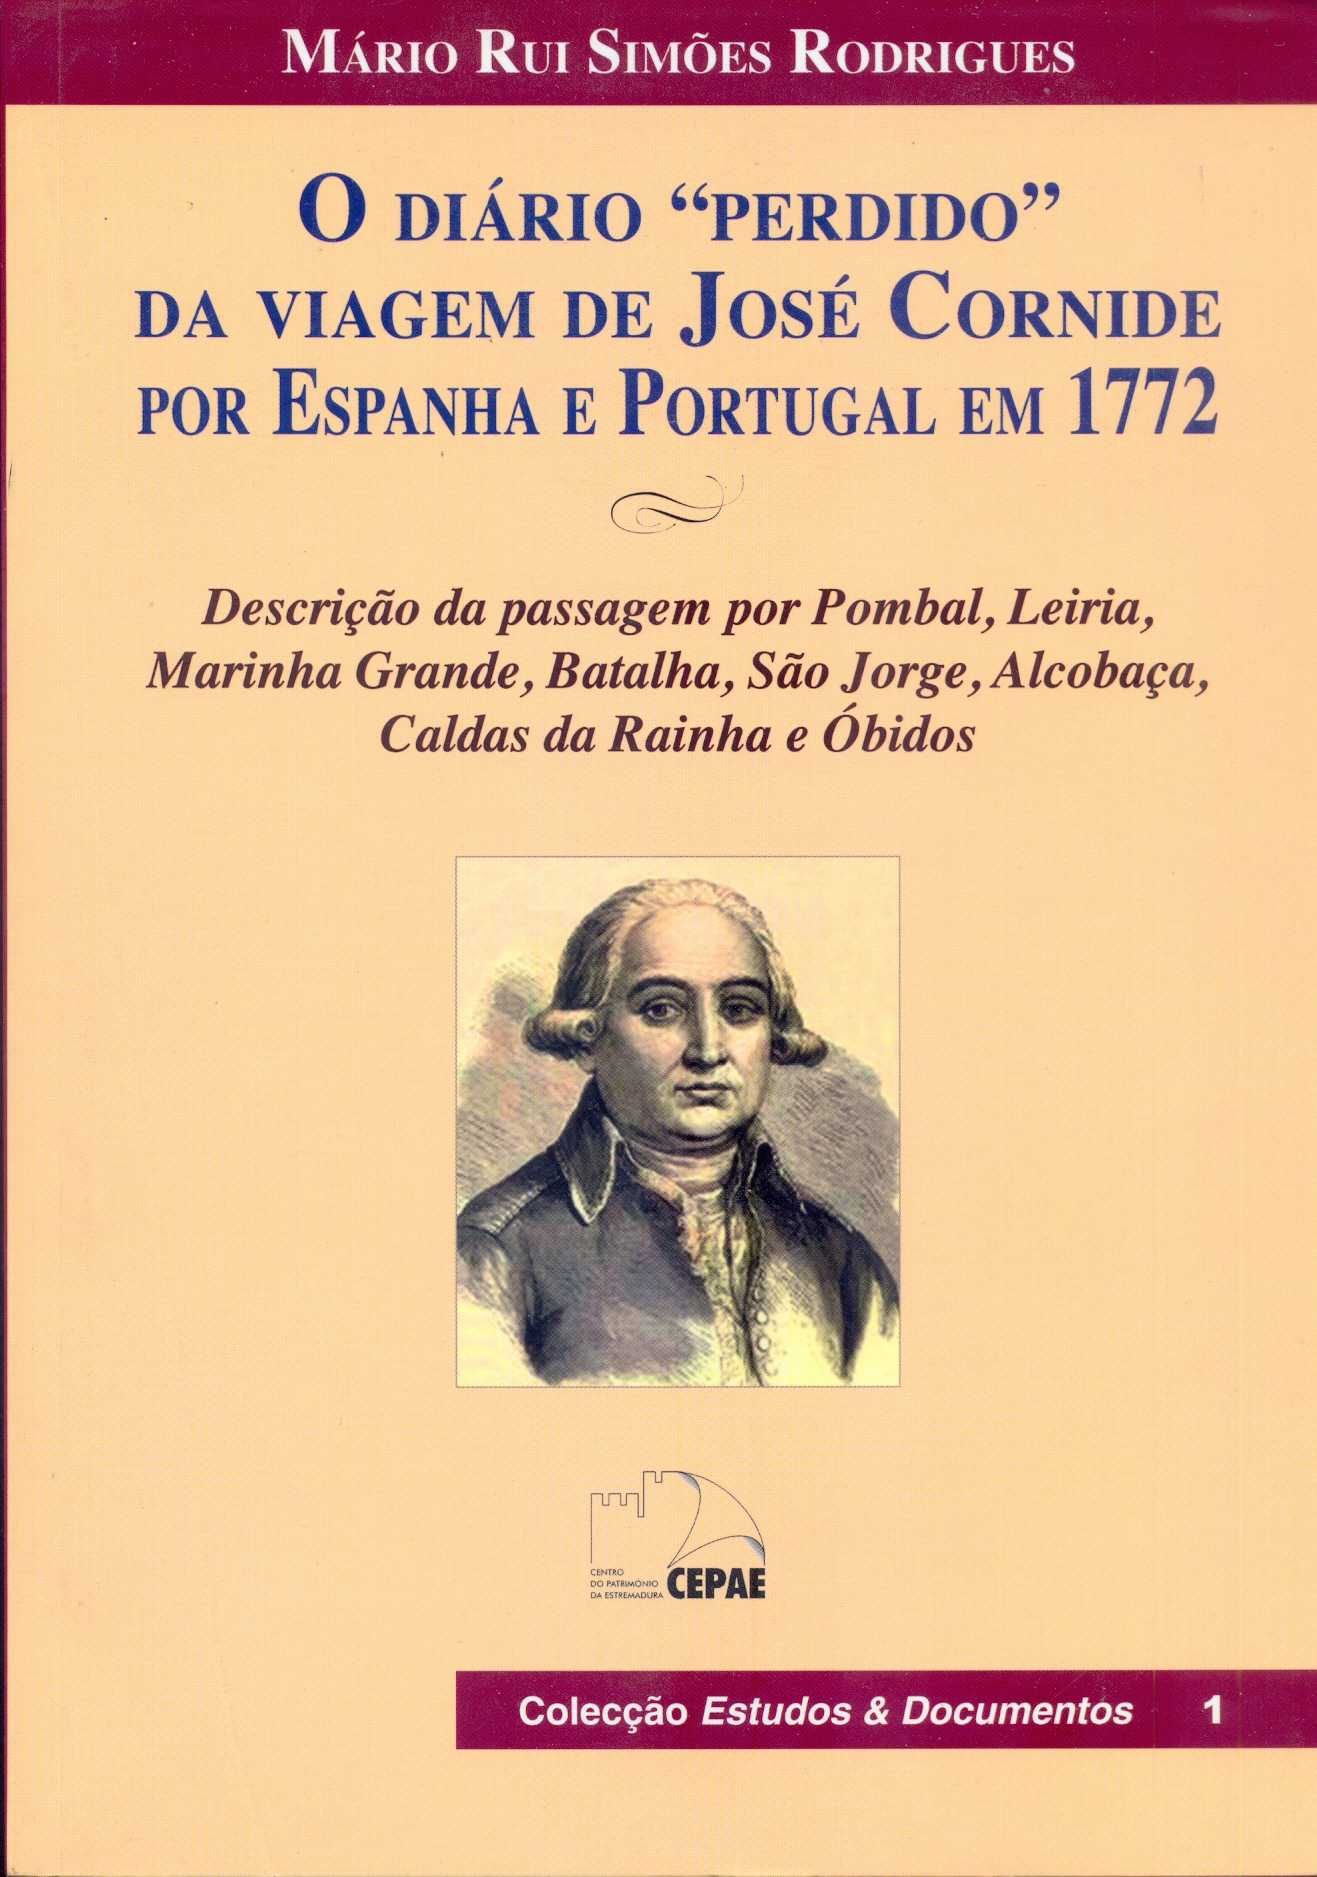 O Diário "Perdido" da Viagem de José Cornide